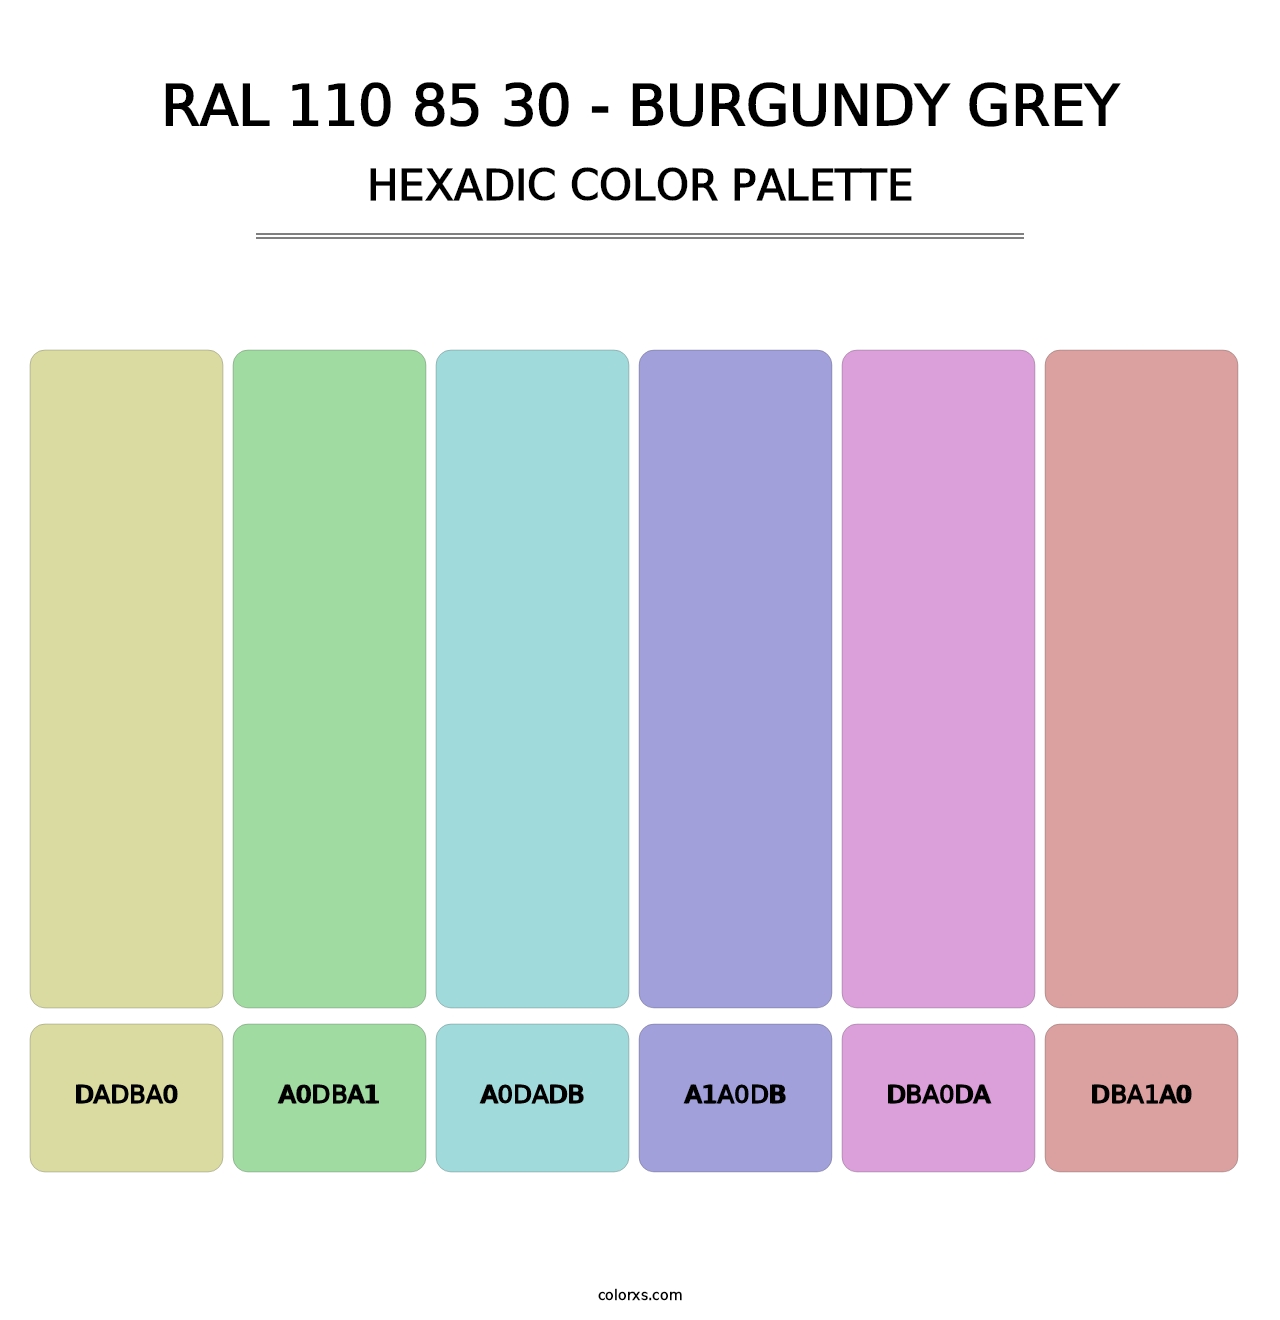 RAL 110 85 30 - Burgundy Grey - Hexadic Color Palette